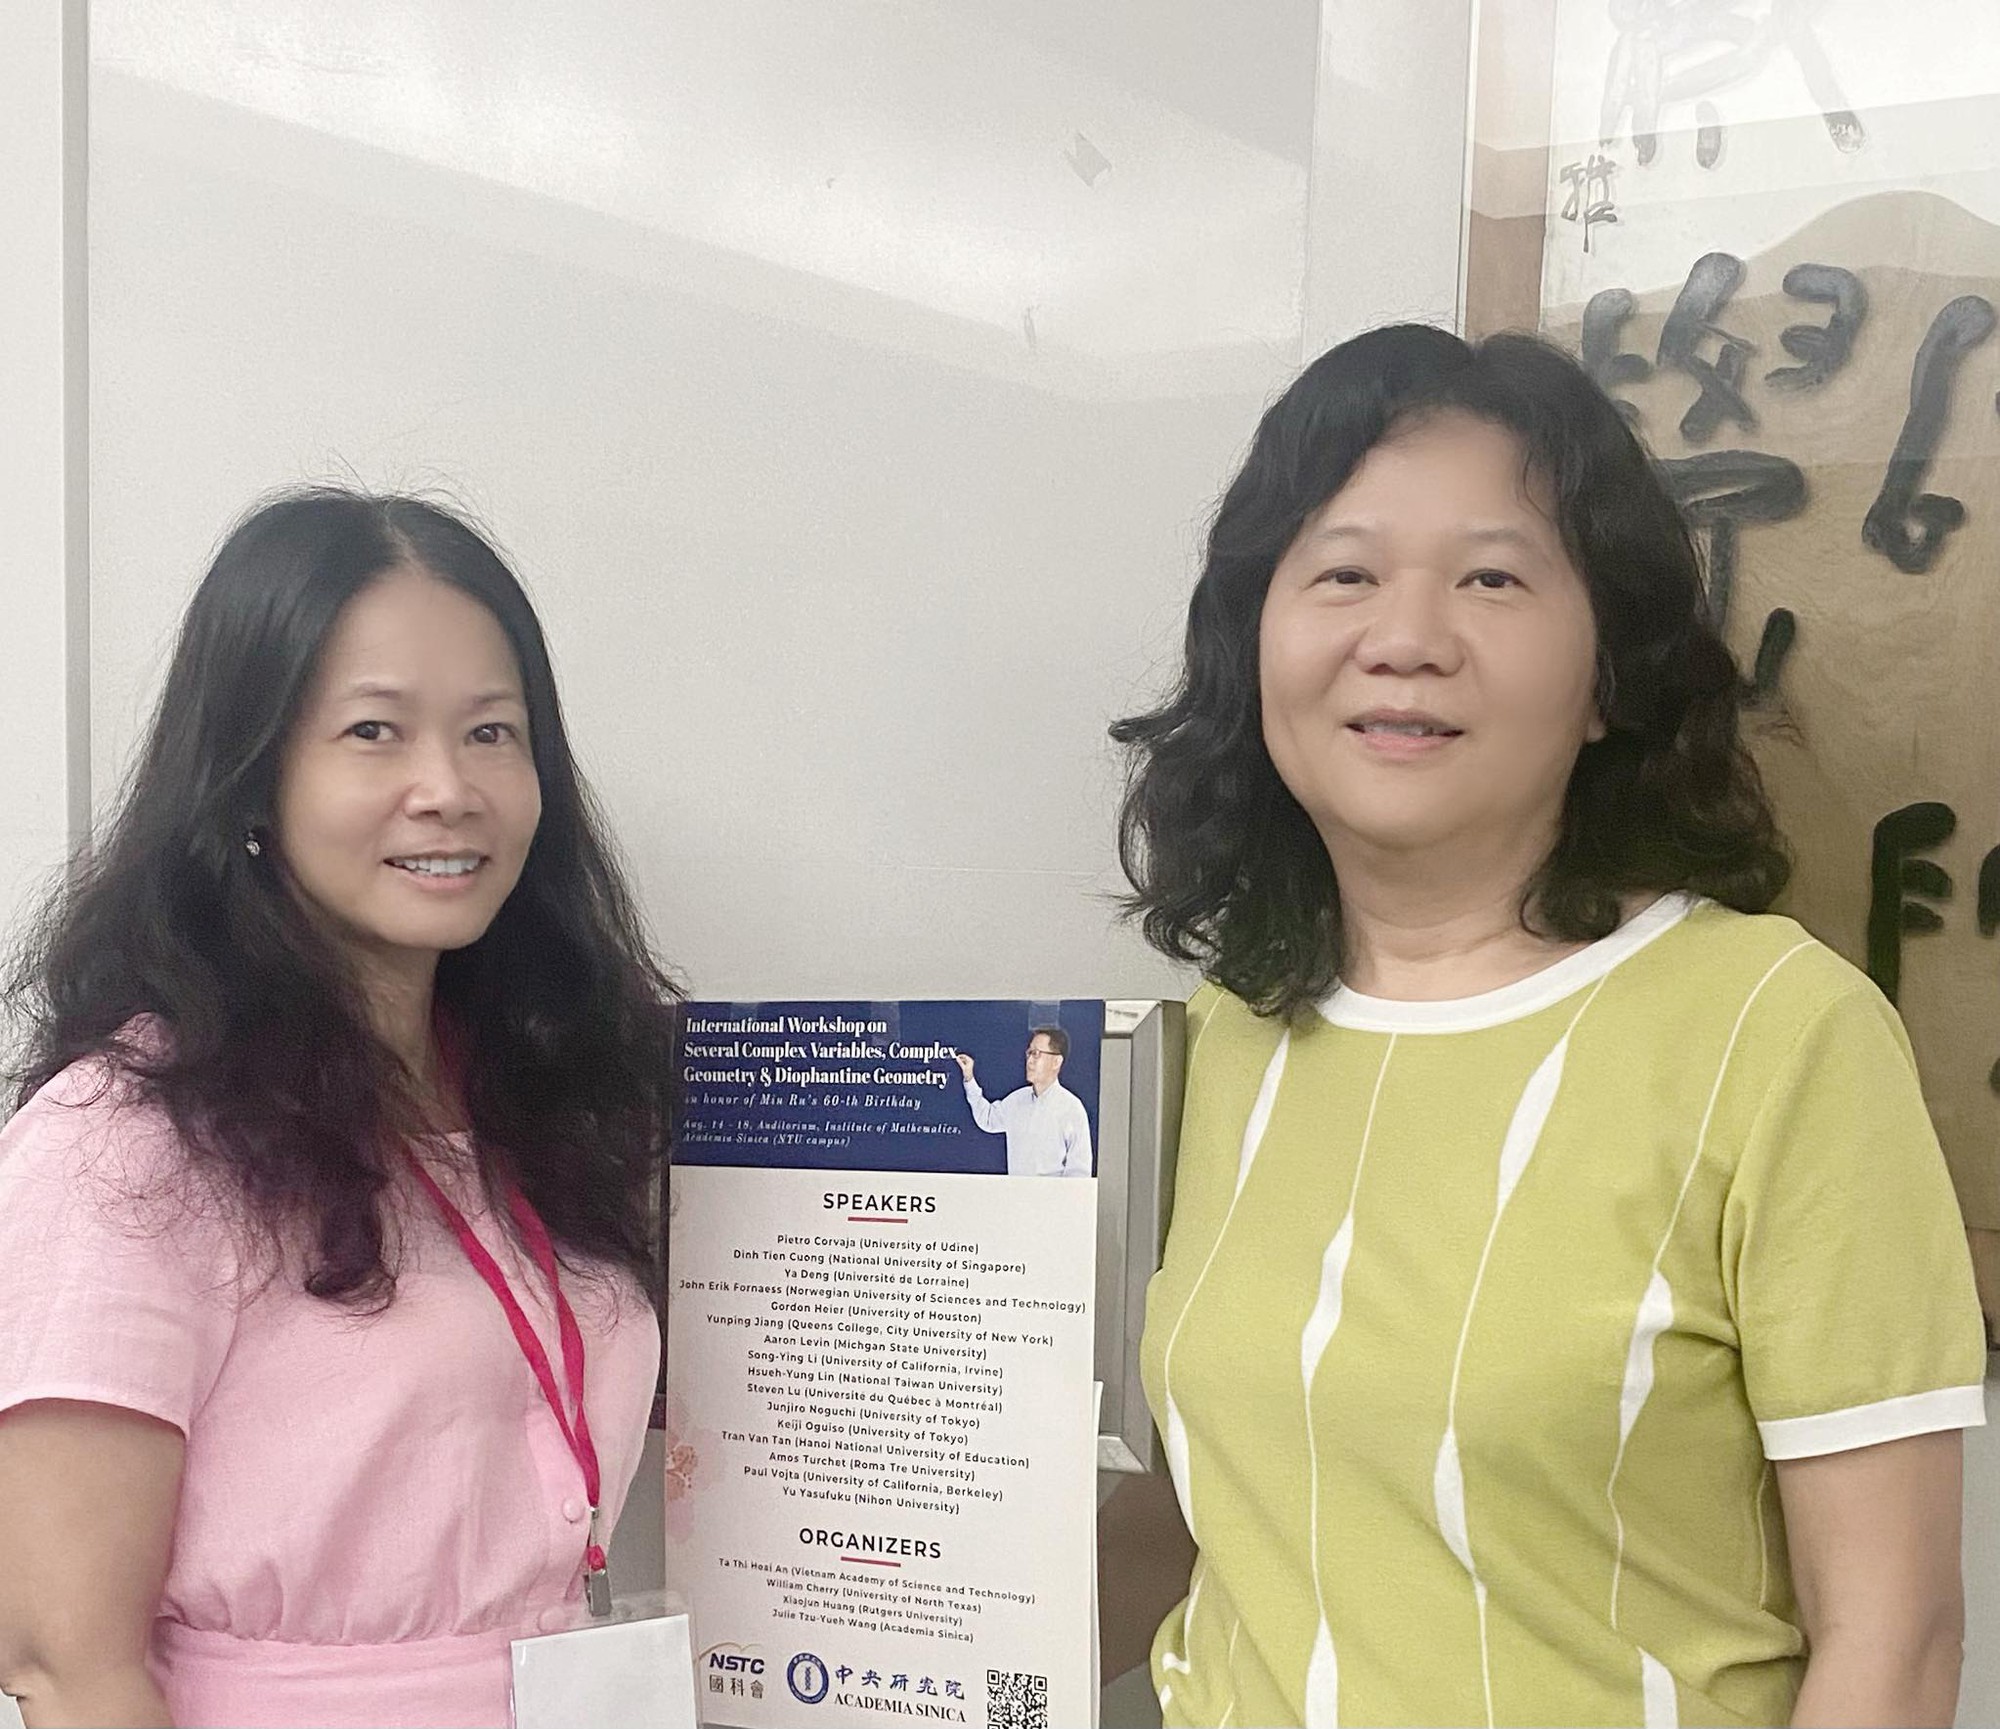 Nữ giáo sư Toán học thứ 3 của Việt Nam Tạ Thị Hoài An: Viết tiếp giấc mơ của bố - Ảnh 7.